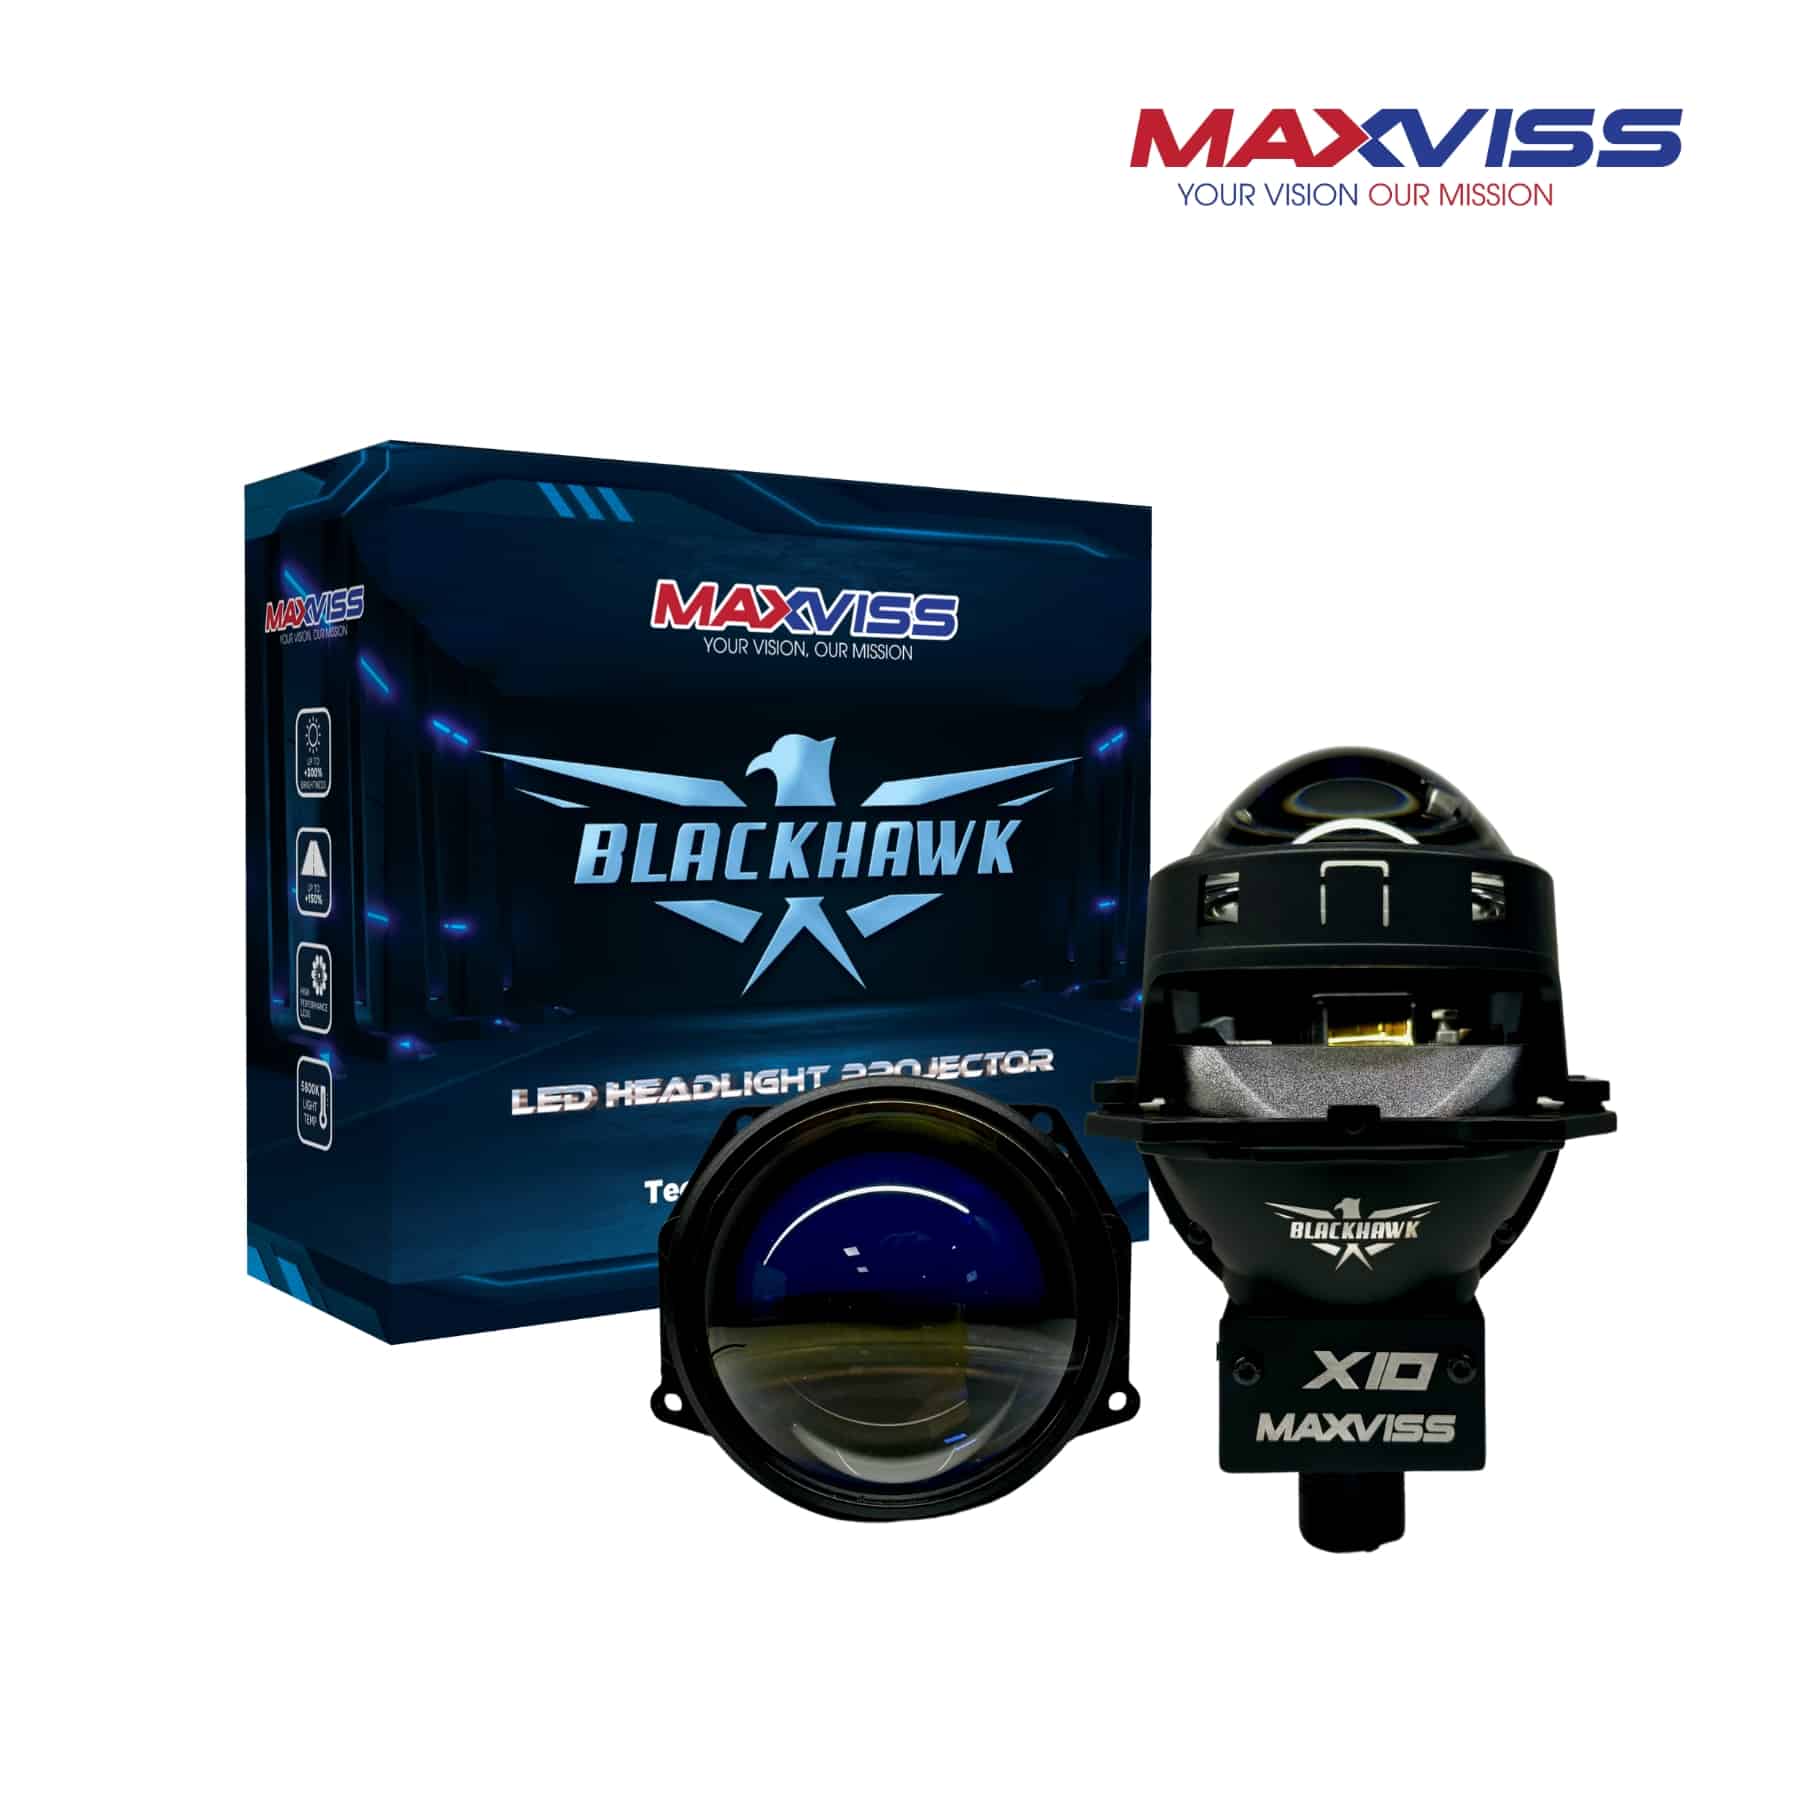 MAXVISS X10 BLACKHAWK